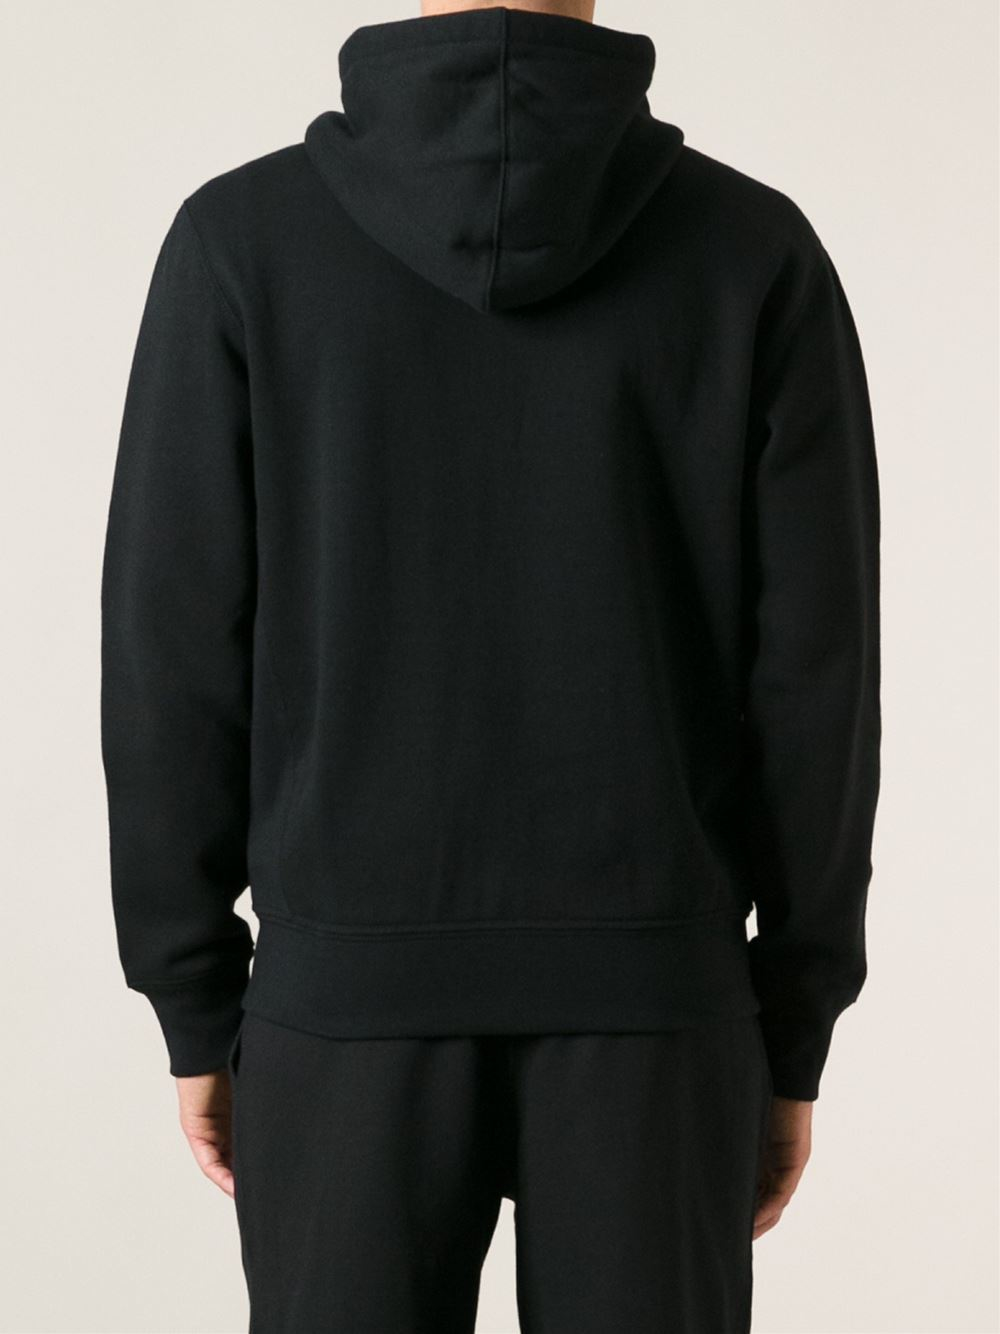 Polo Ralph Lauren Cotton Zip Up Hoodie in Black for Men - Lyst